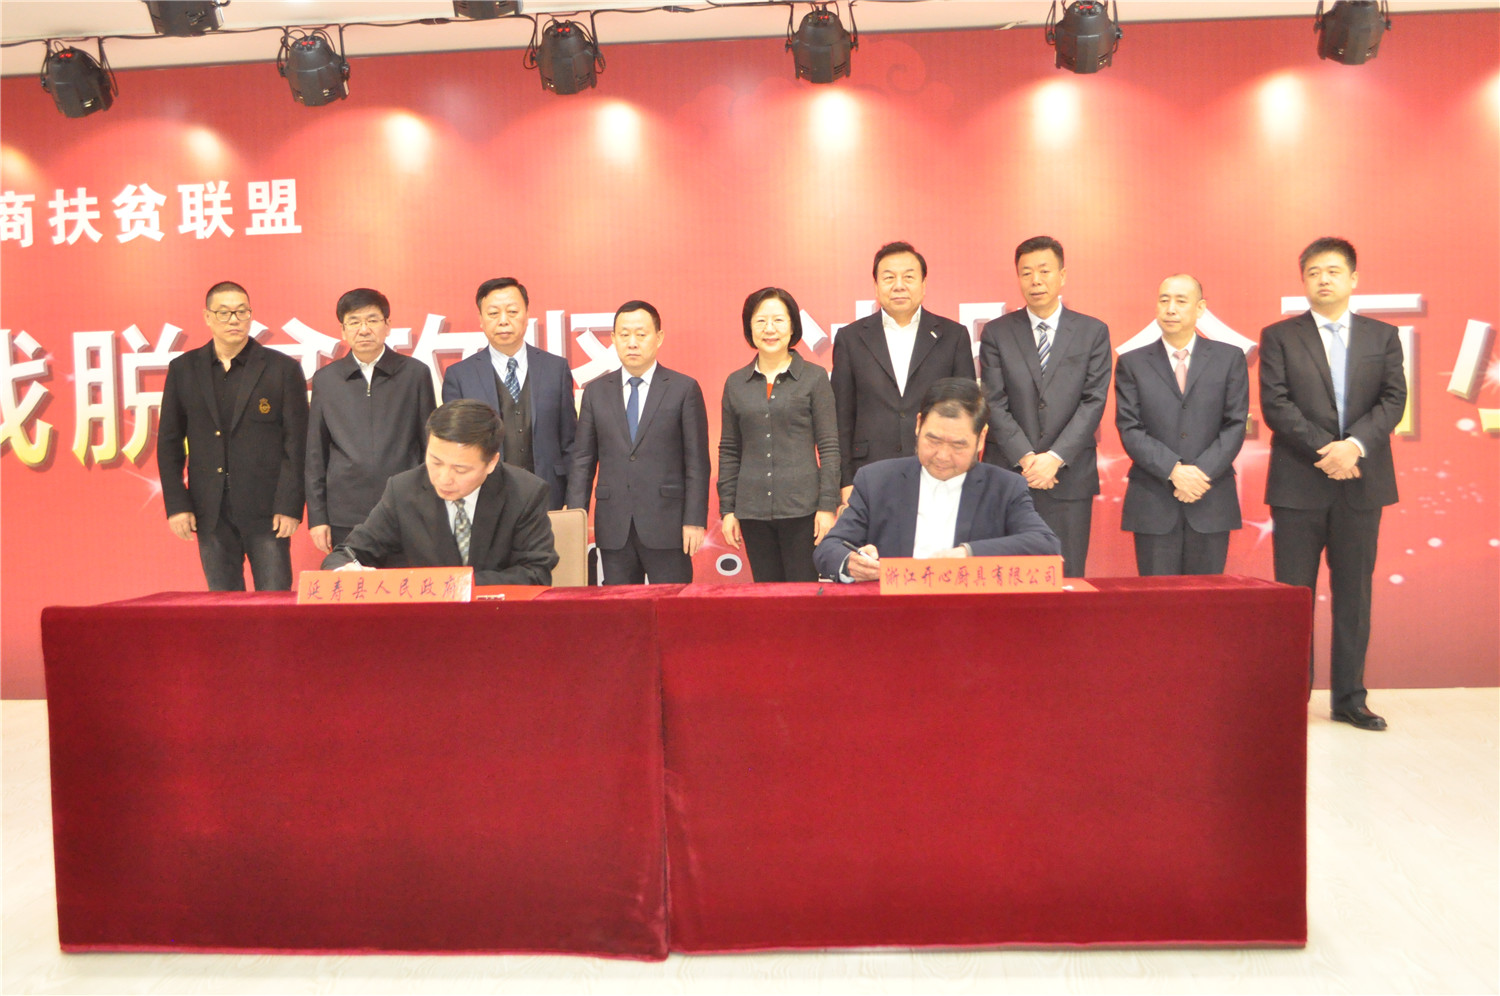 6、爱心企业与延寿县签订产业投资协议.jpg